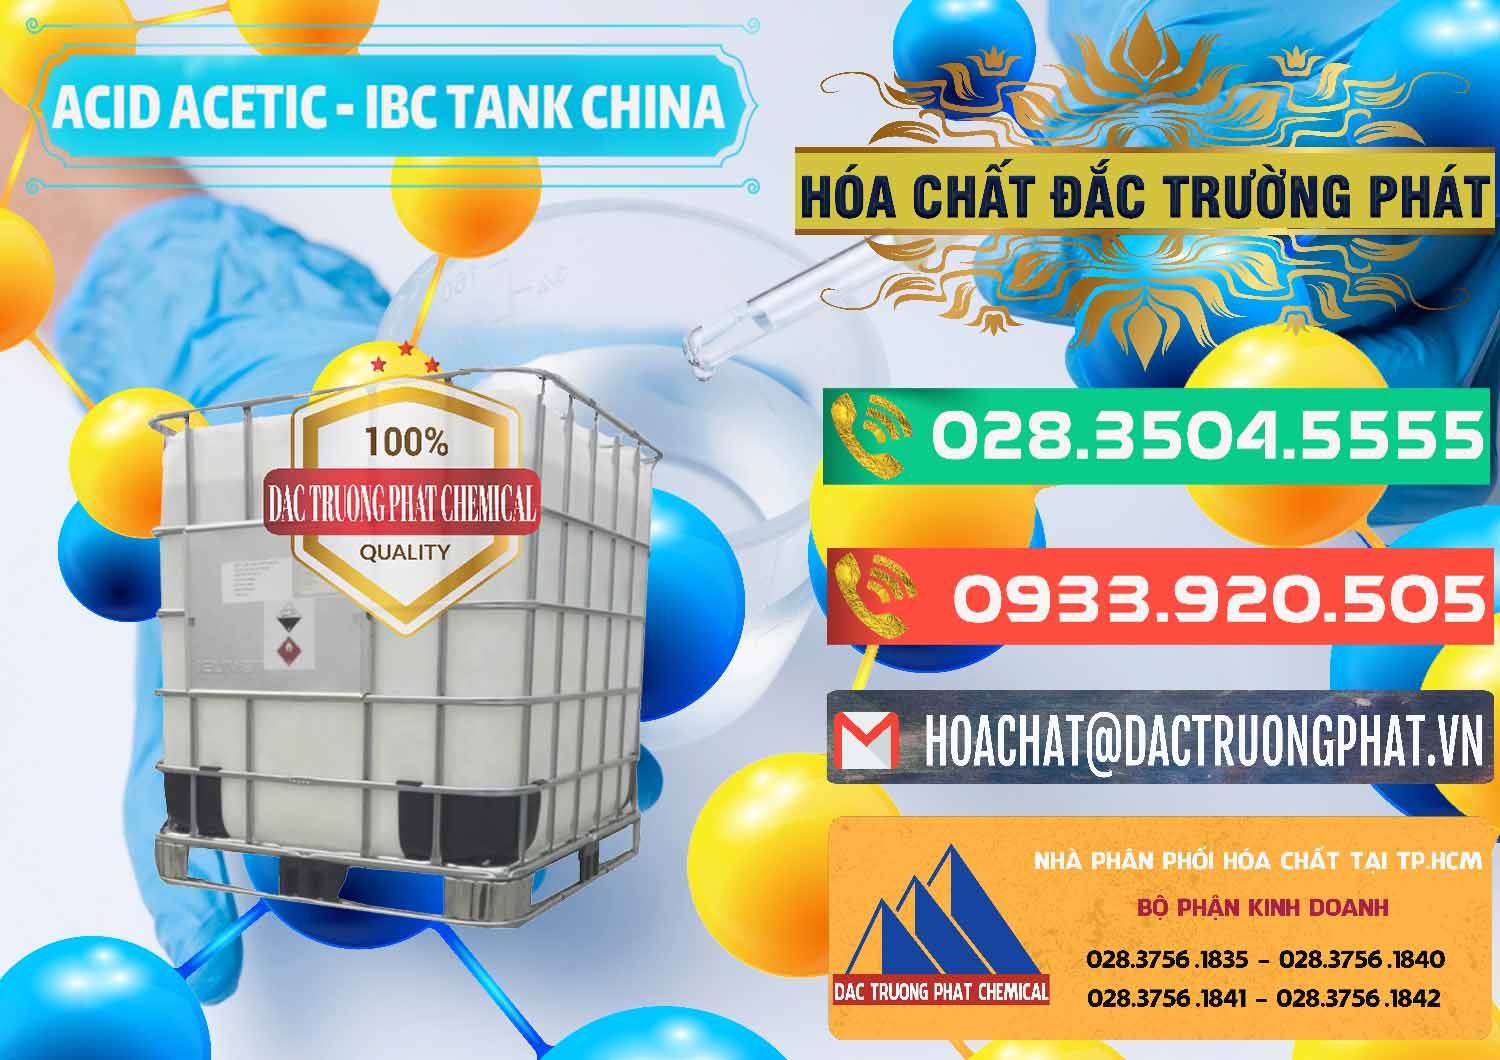 Nơi chuyên cung ứng và bán Acetic Acid – Axit Acetic Tank Bồn IBC Trung Quốc China - 0443 - Cty bán & cung cấp hóa chất tại TP.HCM - congtyhoachat.com.vn